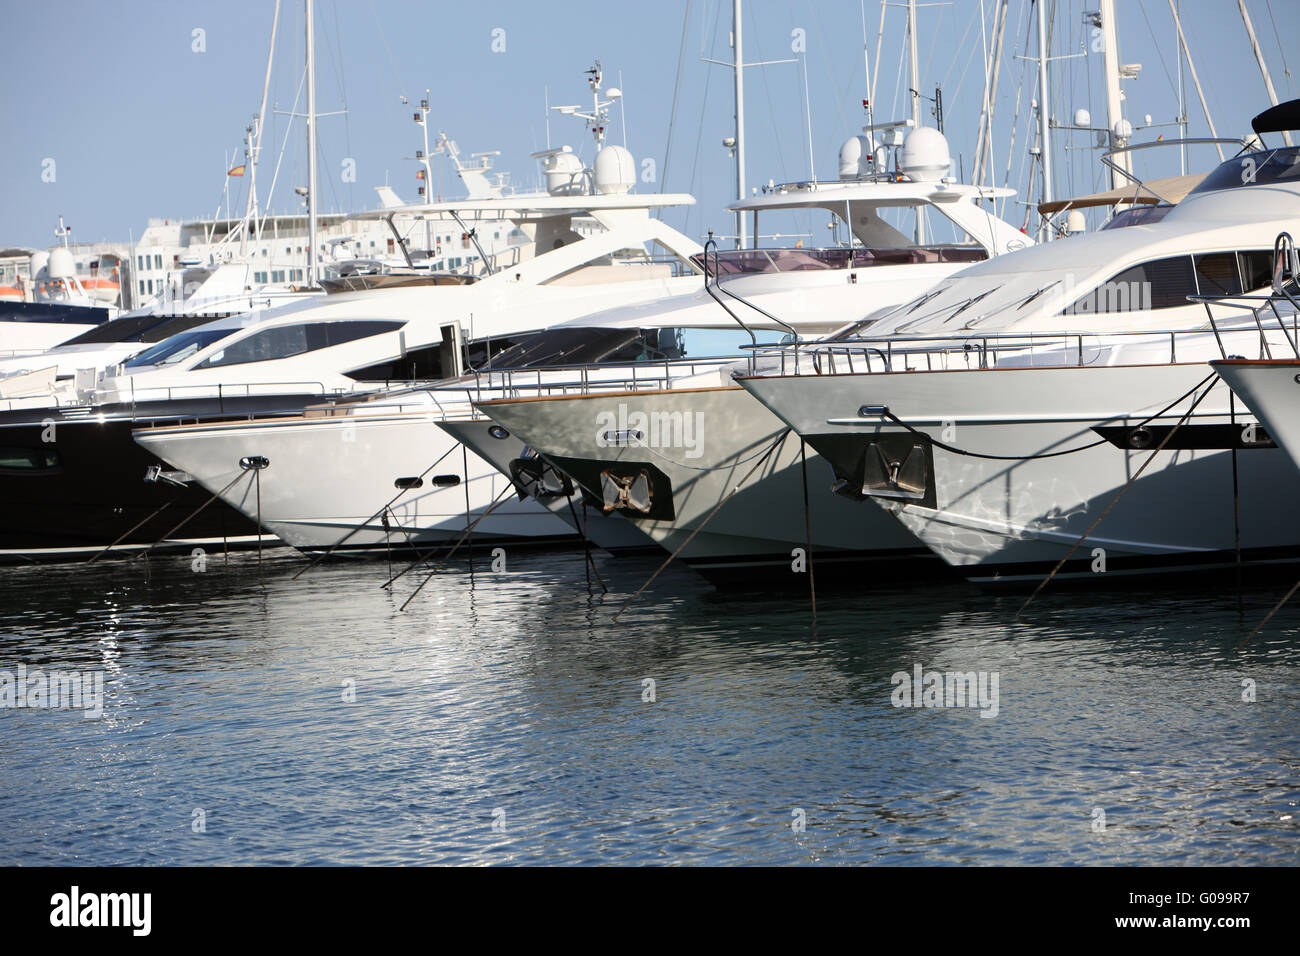 Row of luxury motorised yachts Stock Photo